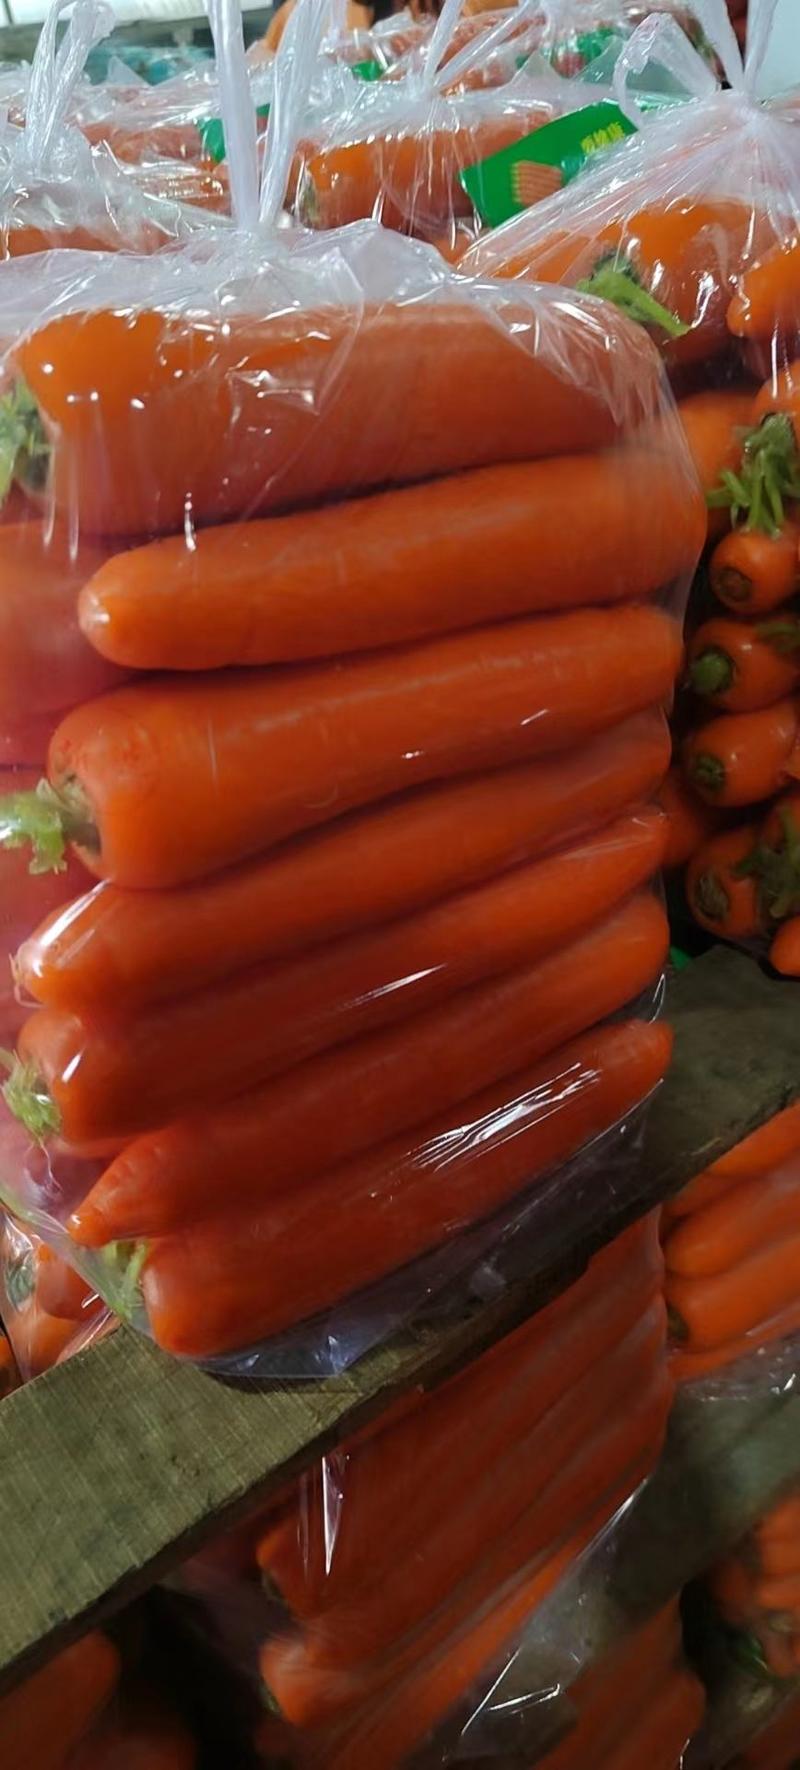 精品胡萝卜开封三红胡萝卜大量供应中包装齐全品质保障